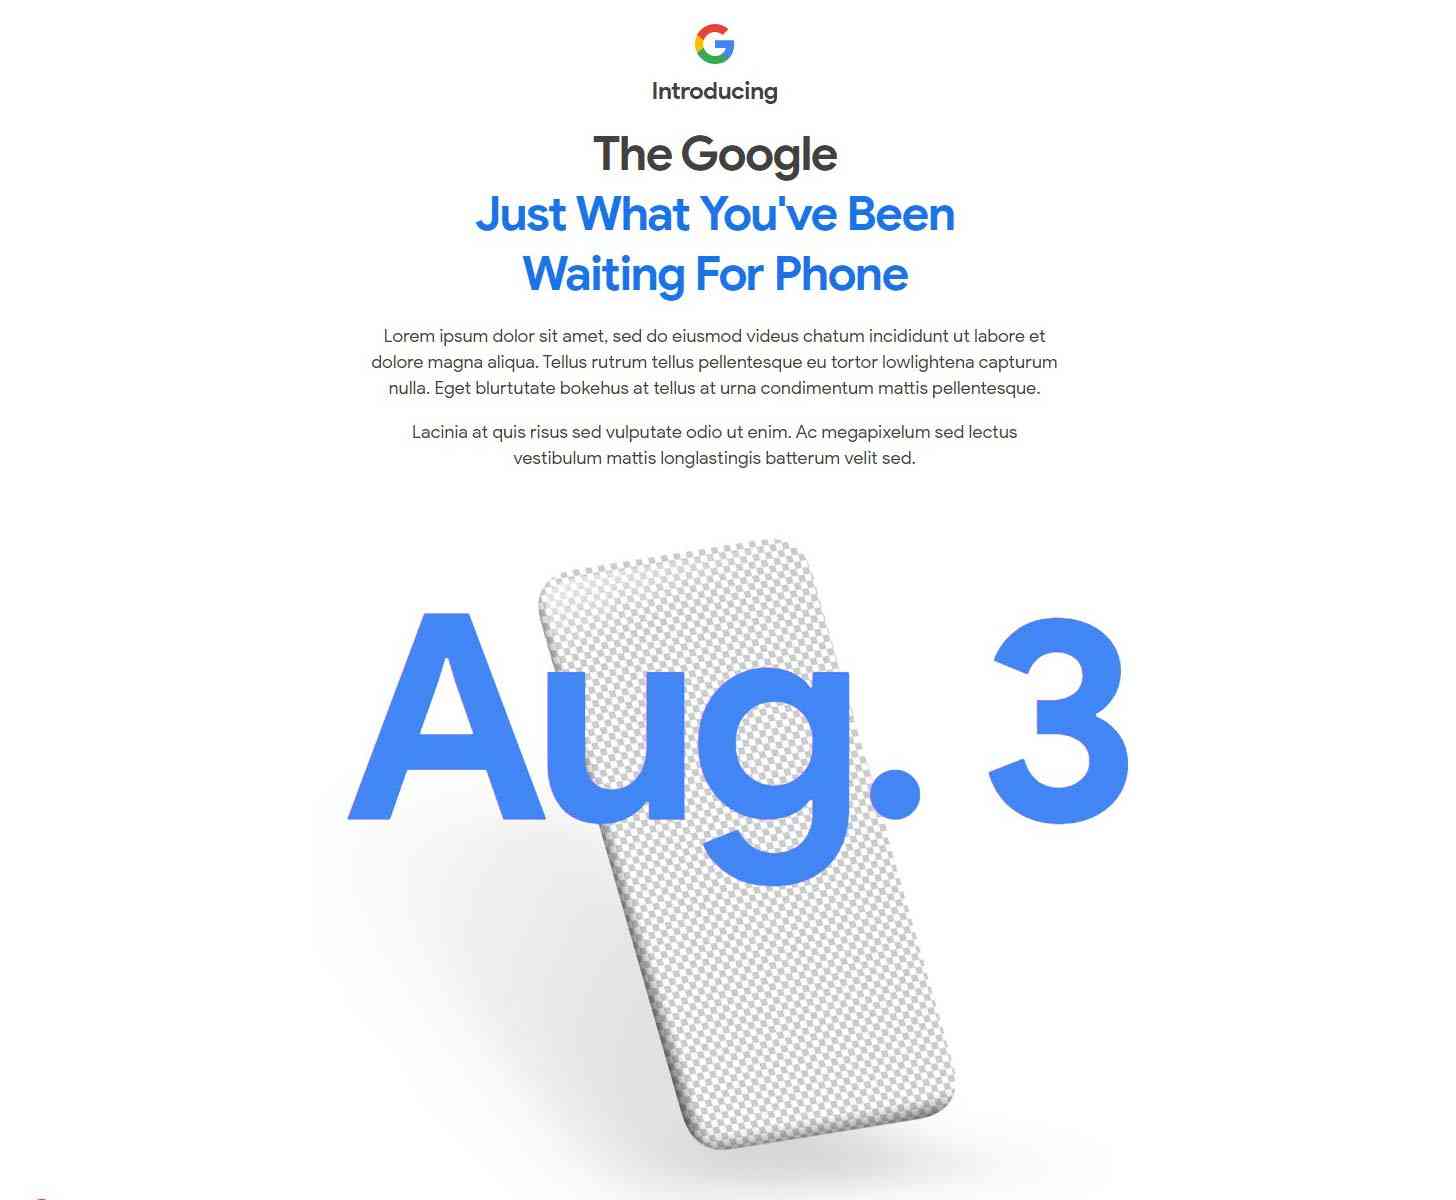 Google Pixel 4a August 3 teaser